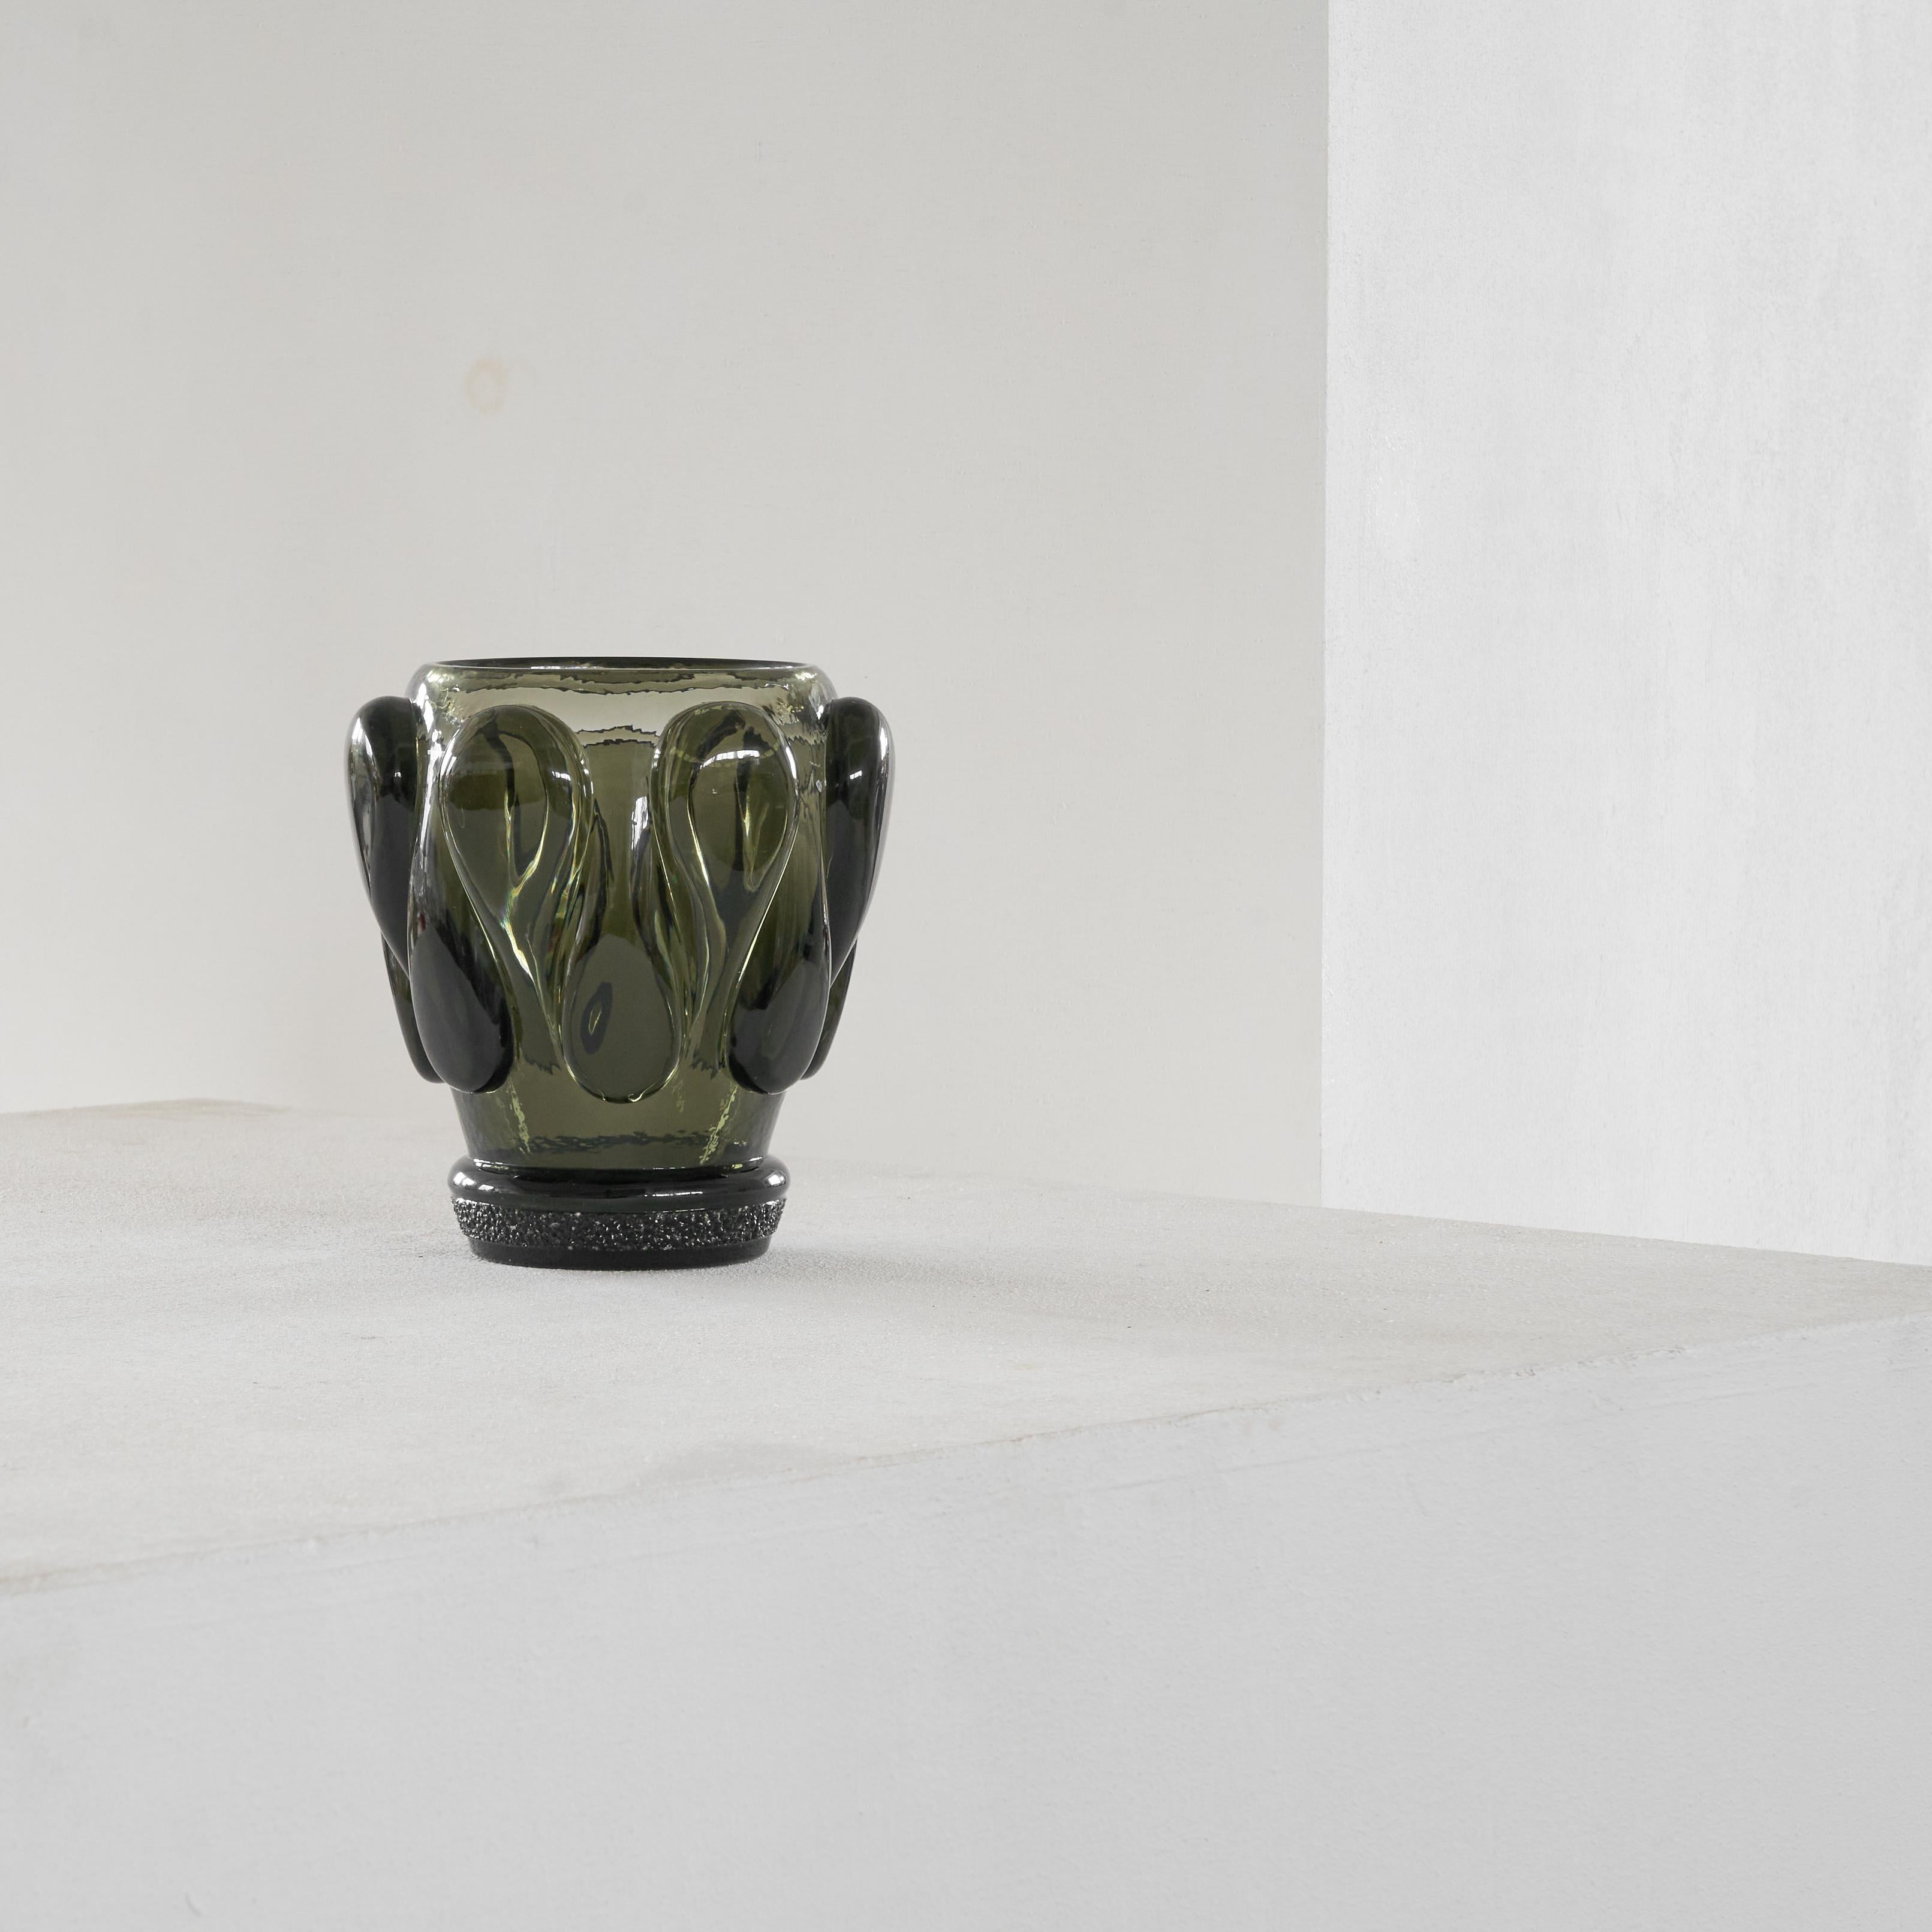 Felix Průša (1922-1999) Vase en verre d'art, République tchèque, années 1960.

Il s'agit d'une magnifique pièce d'art en verre tchèque du milieu du siècle, d'une couleur vert émeraude profond. Forme intéressante constituée d'une répétition